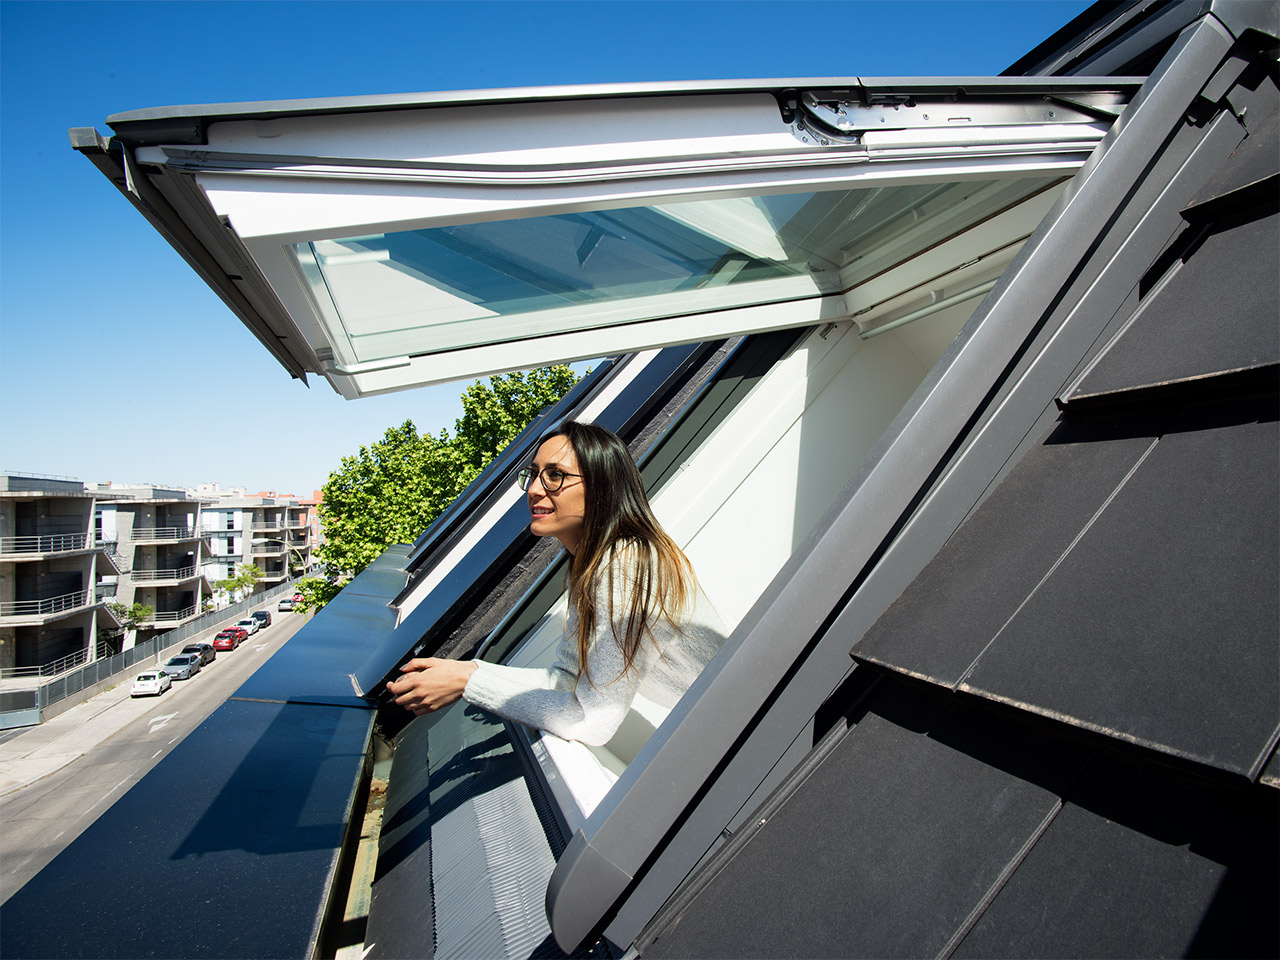 Dachfenster Heikam - modern mit beDacht in die Zukunft